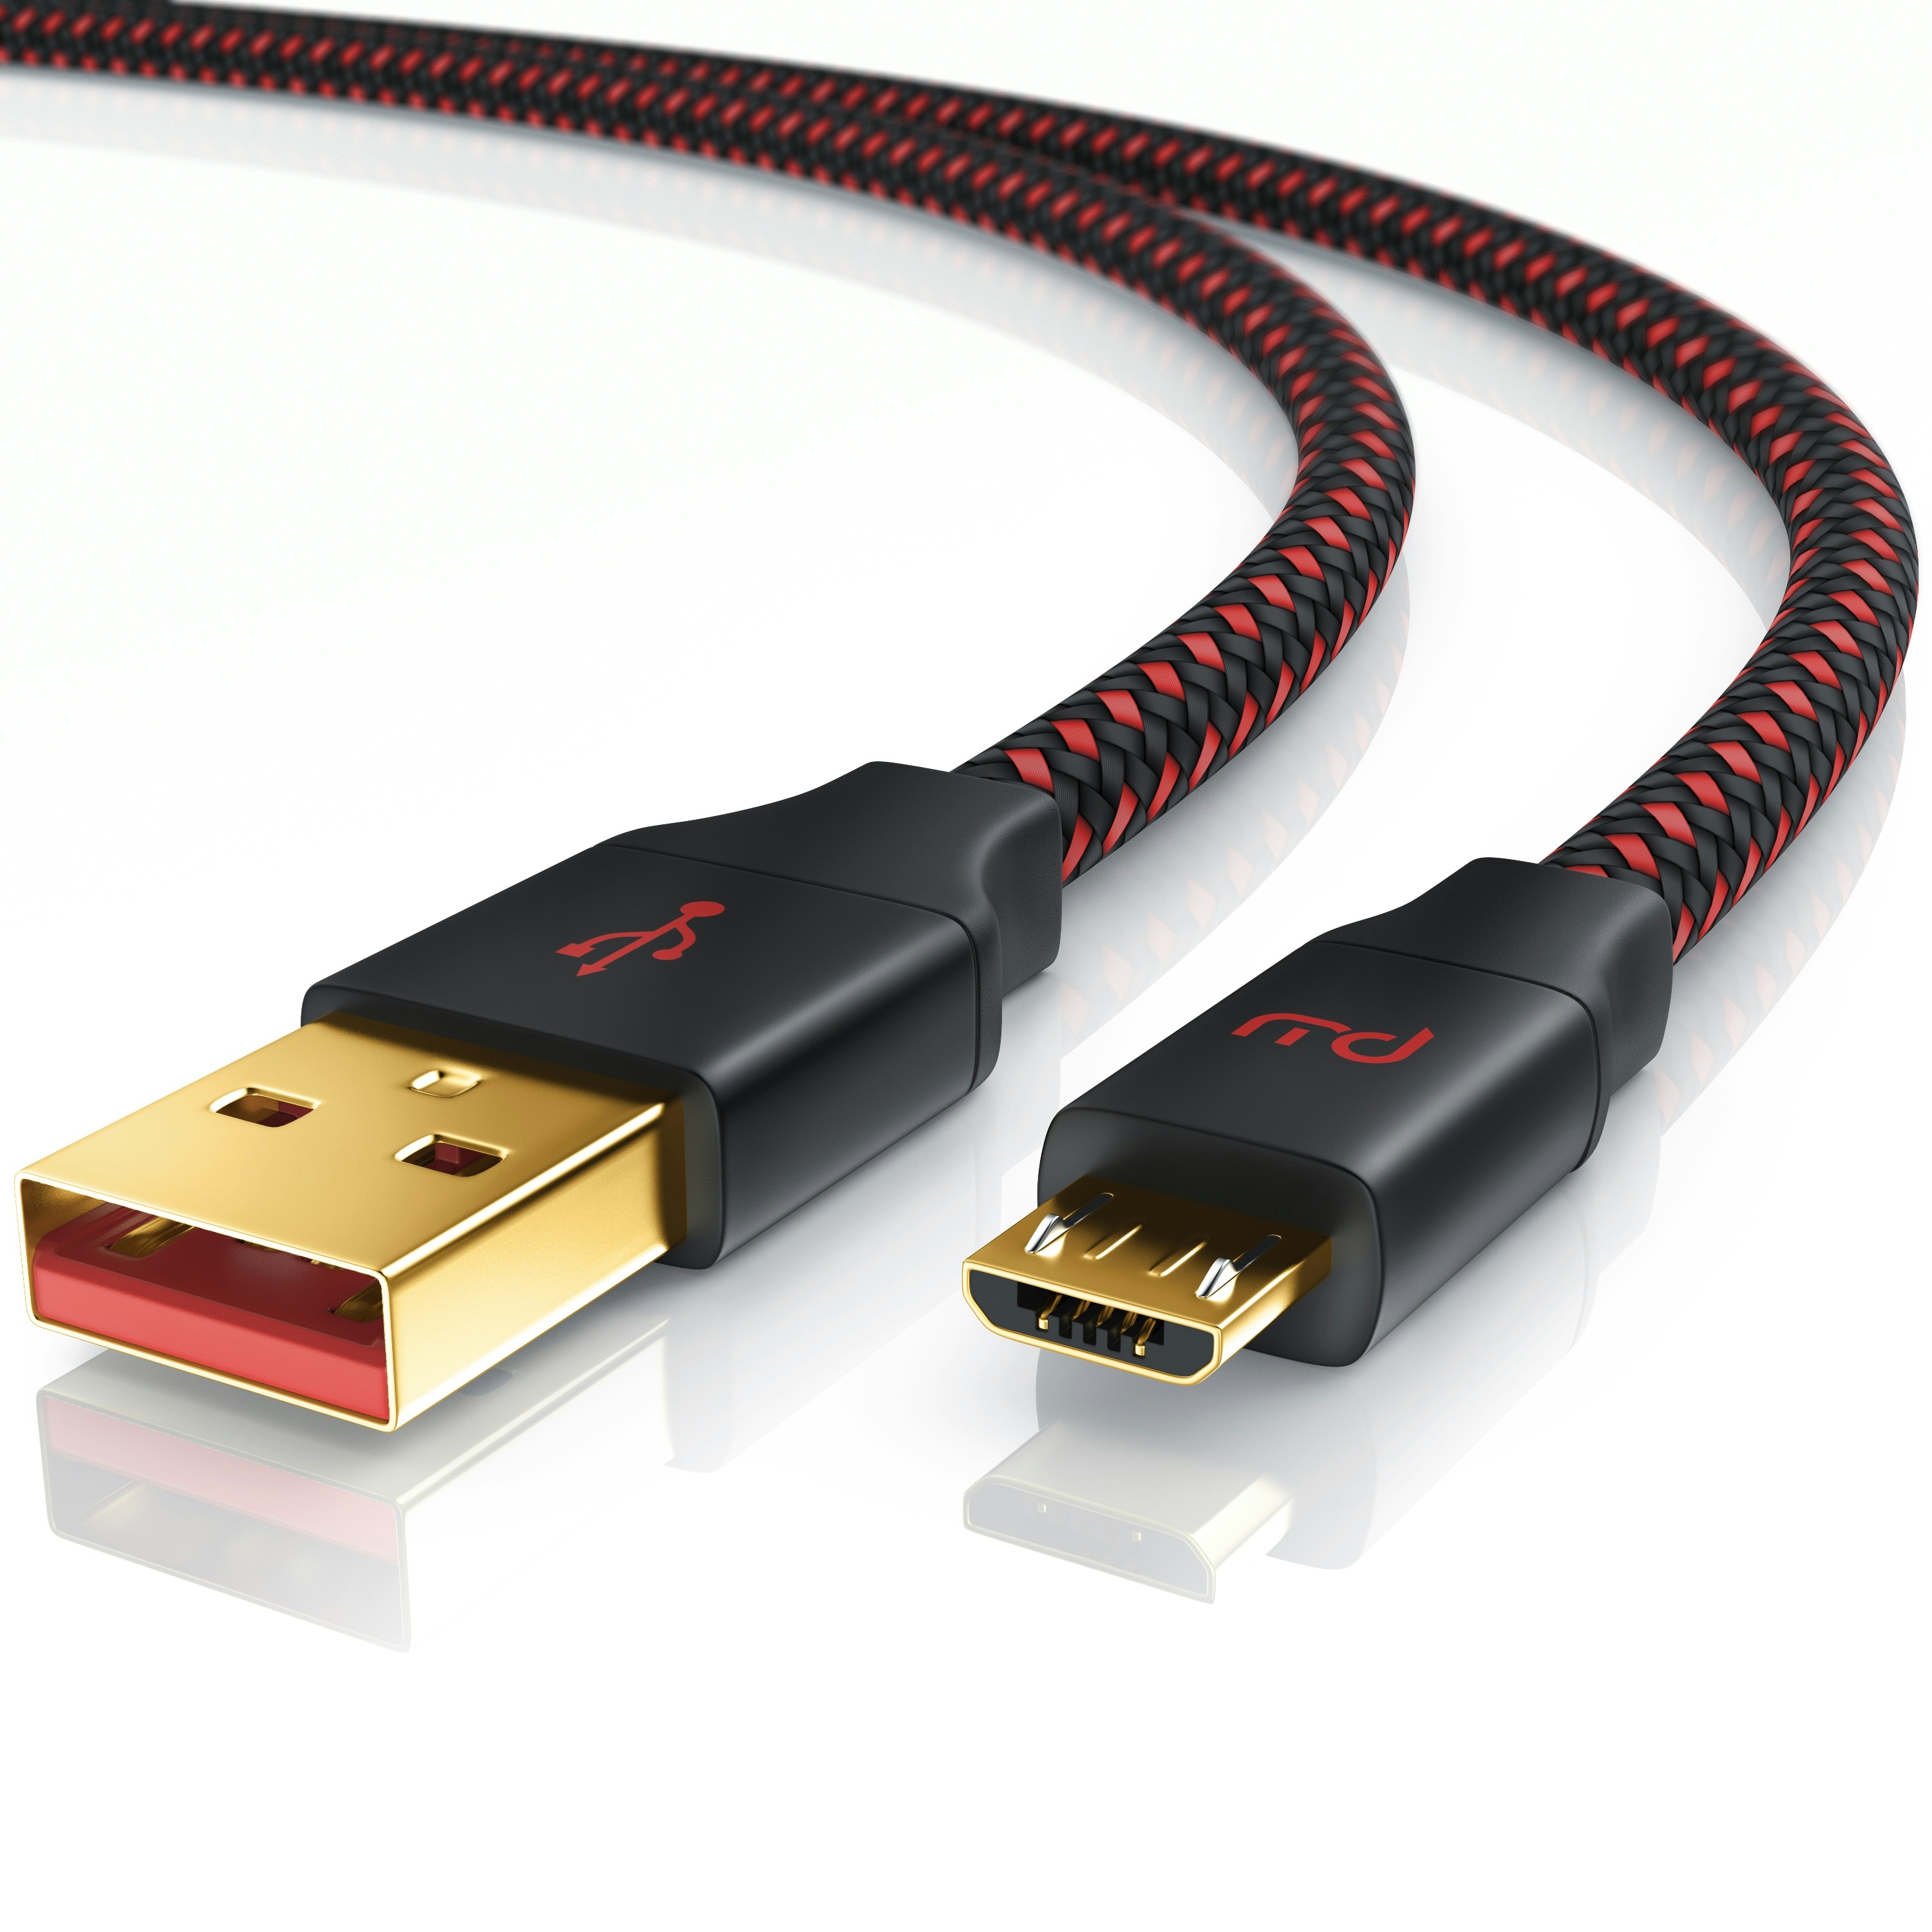 Primewire Micro-USB 2.0 zu USB Typ A Kabel, UltimateCharge MicroUSB 2.0 Schnellladekabel mit Datenübertragung - 1m